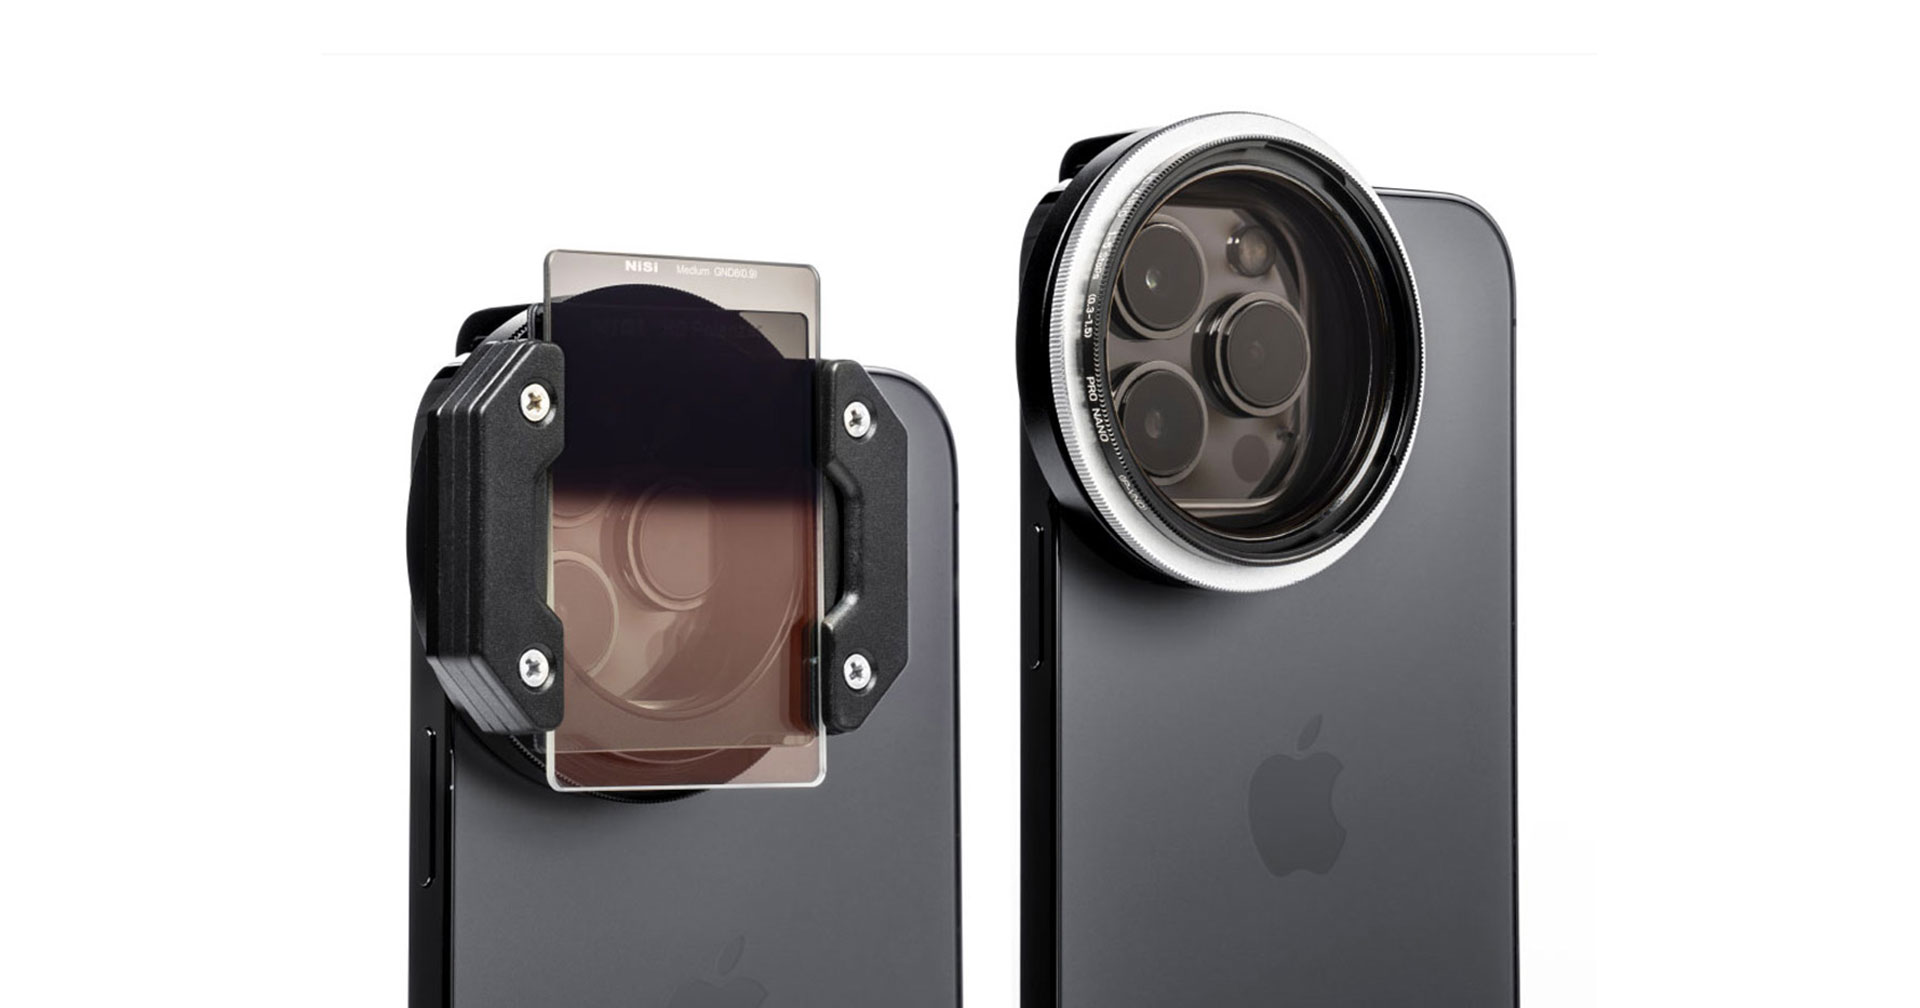 เปิดตัว NISi IP-A Filter System ชุดฟิลเตอร์ kit สำหรับช่างภาพสาย iPhone ที่จริงจัง!